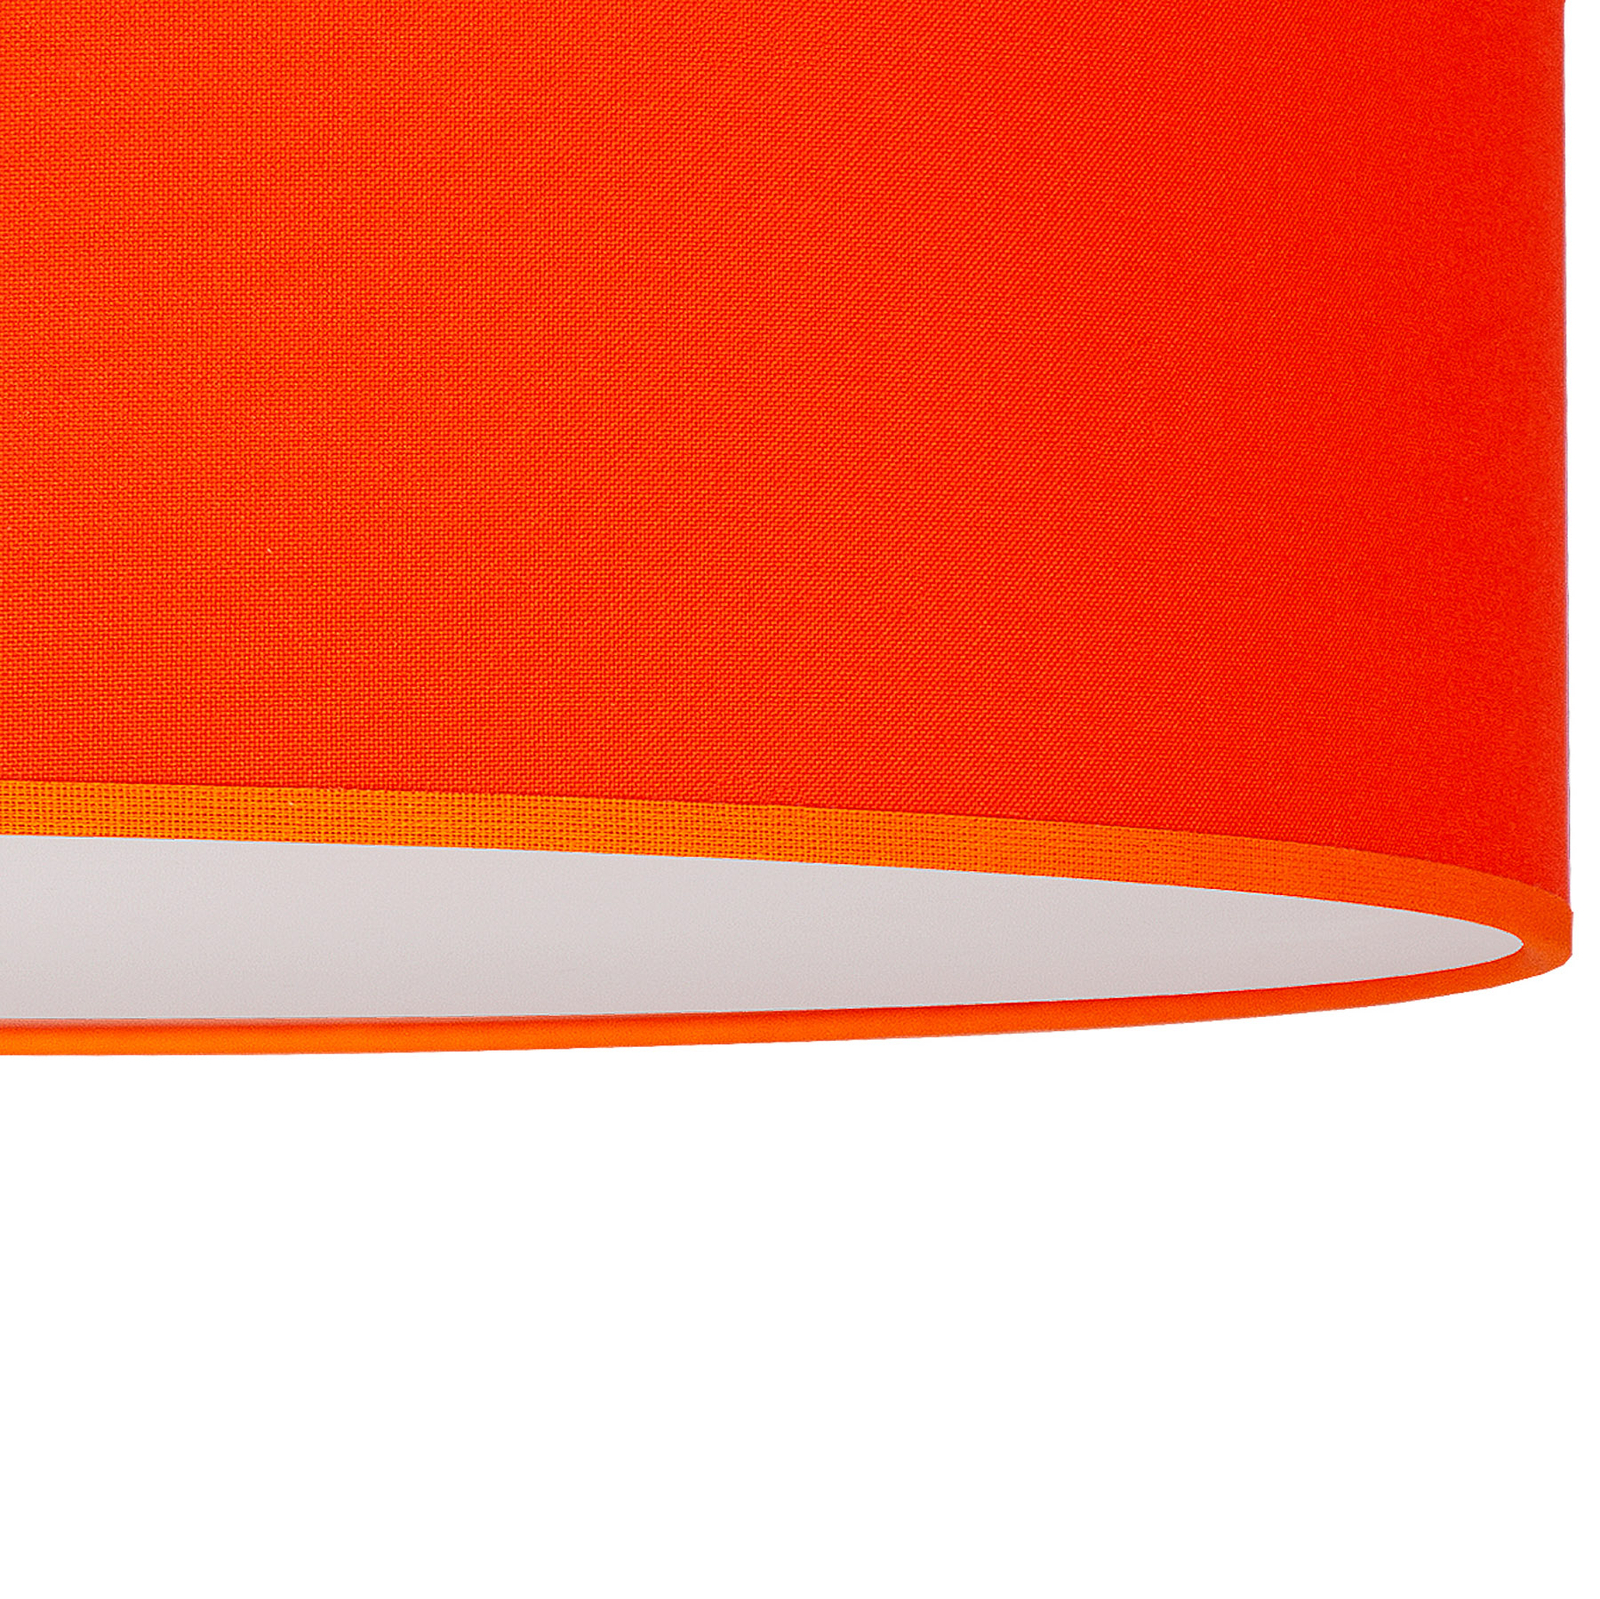 Euluna Roller Decke, Stoffschirm orange, Ø 40 cm